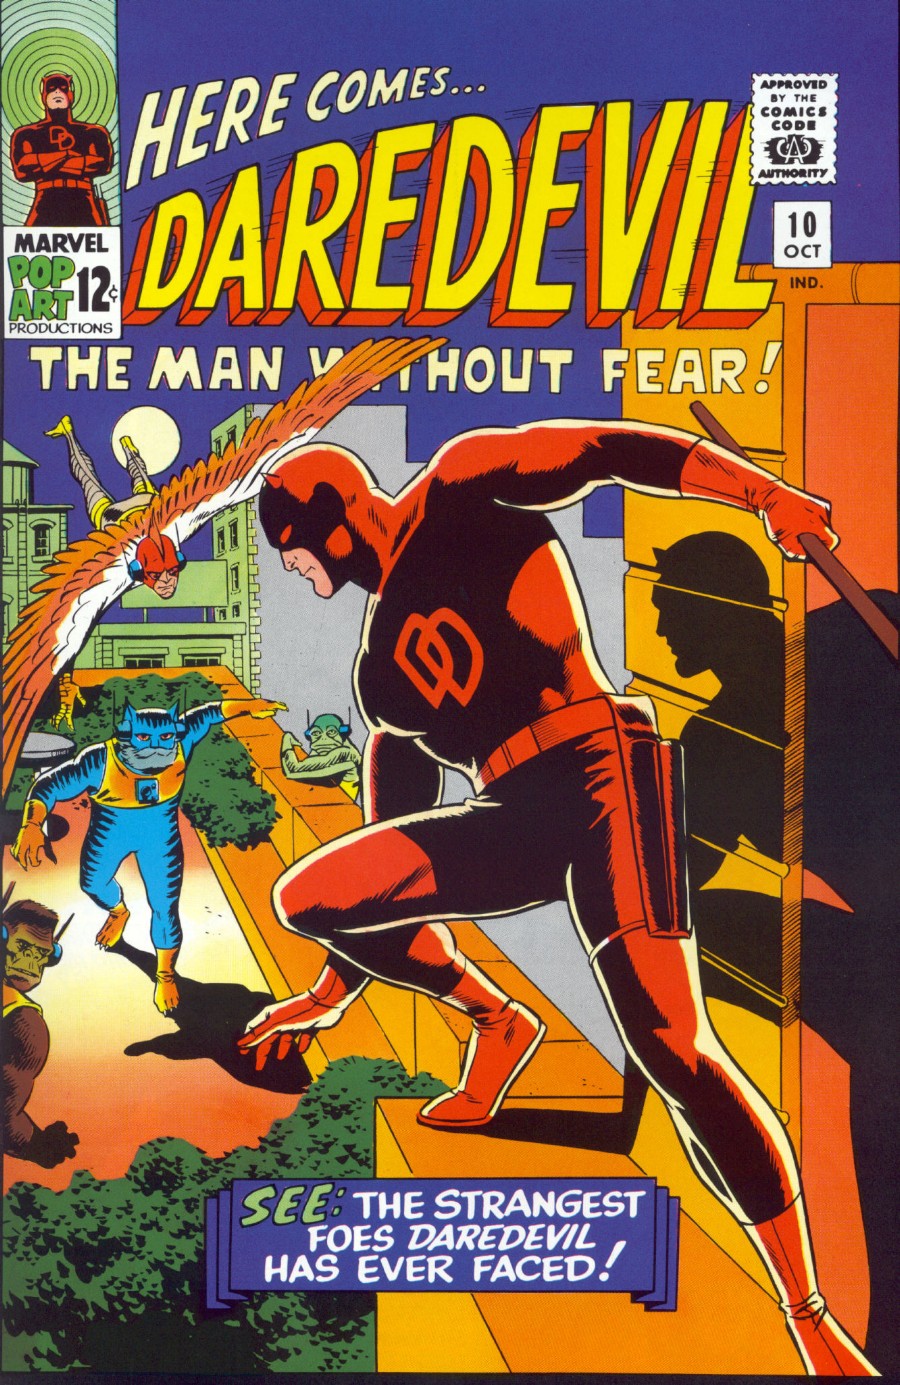 Daredevil Vol. 1 #10